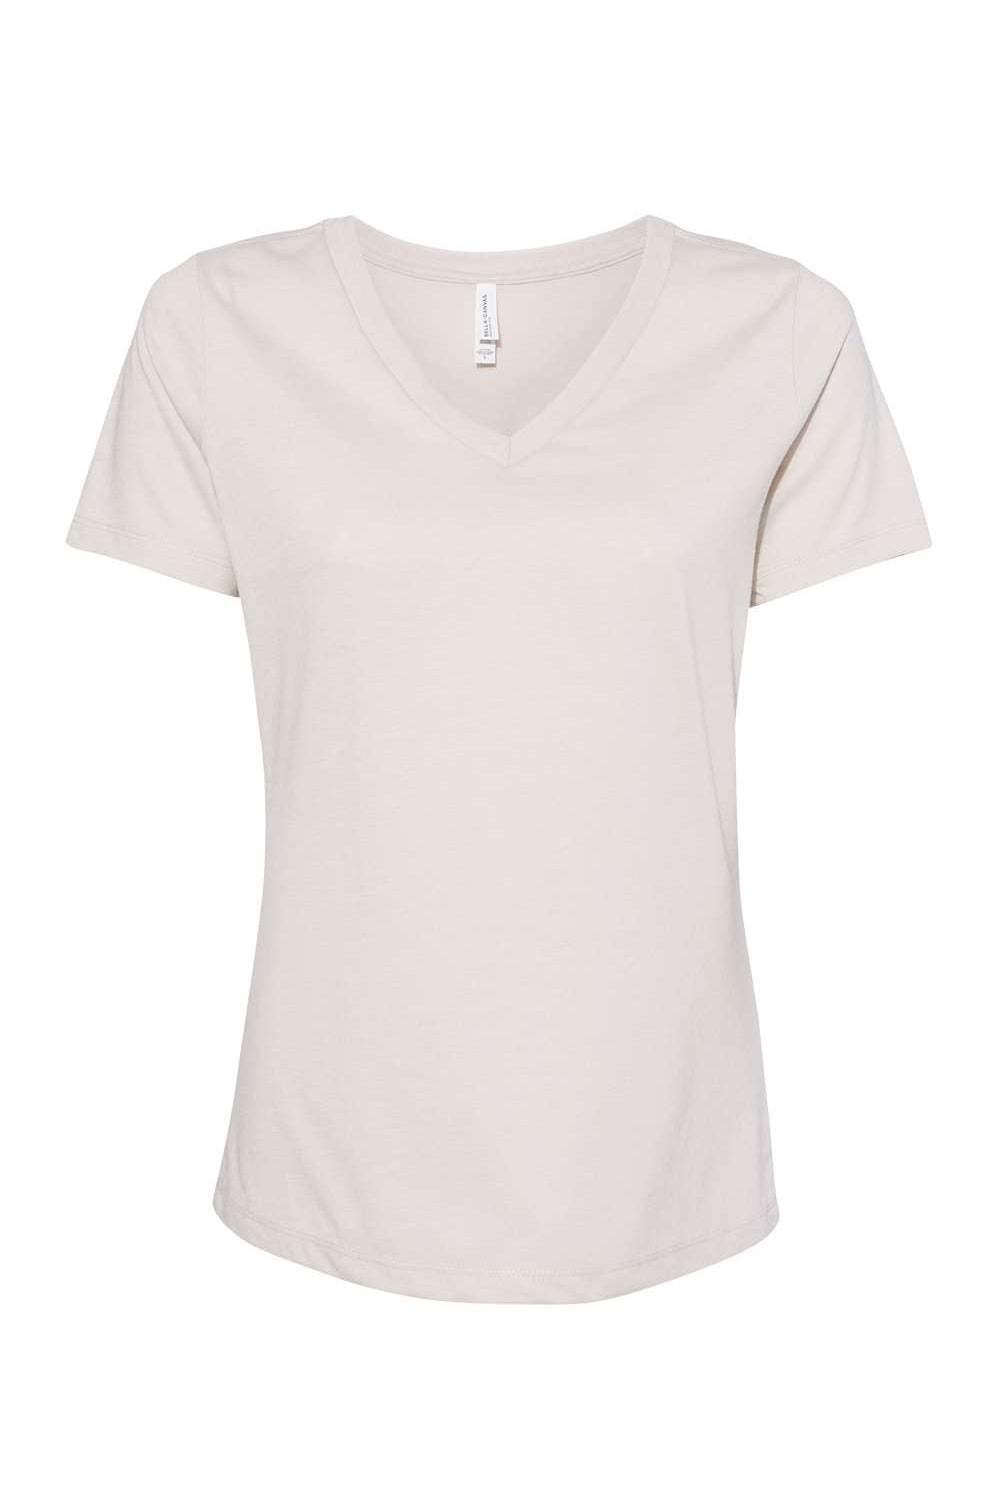 Bella + Canvas BC6405CVC Womens CVC Short Sleeve V-Neck T-Shirt Heather Dust Flat Front